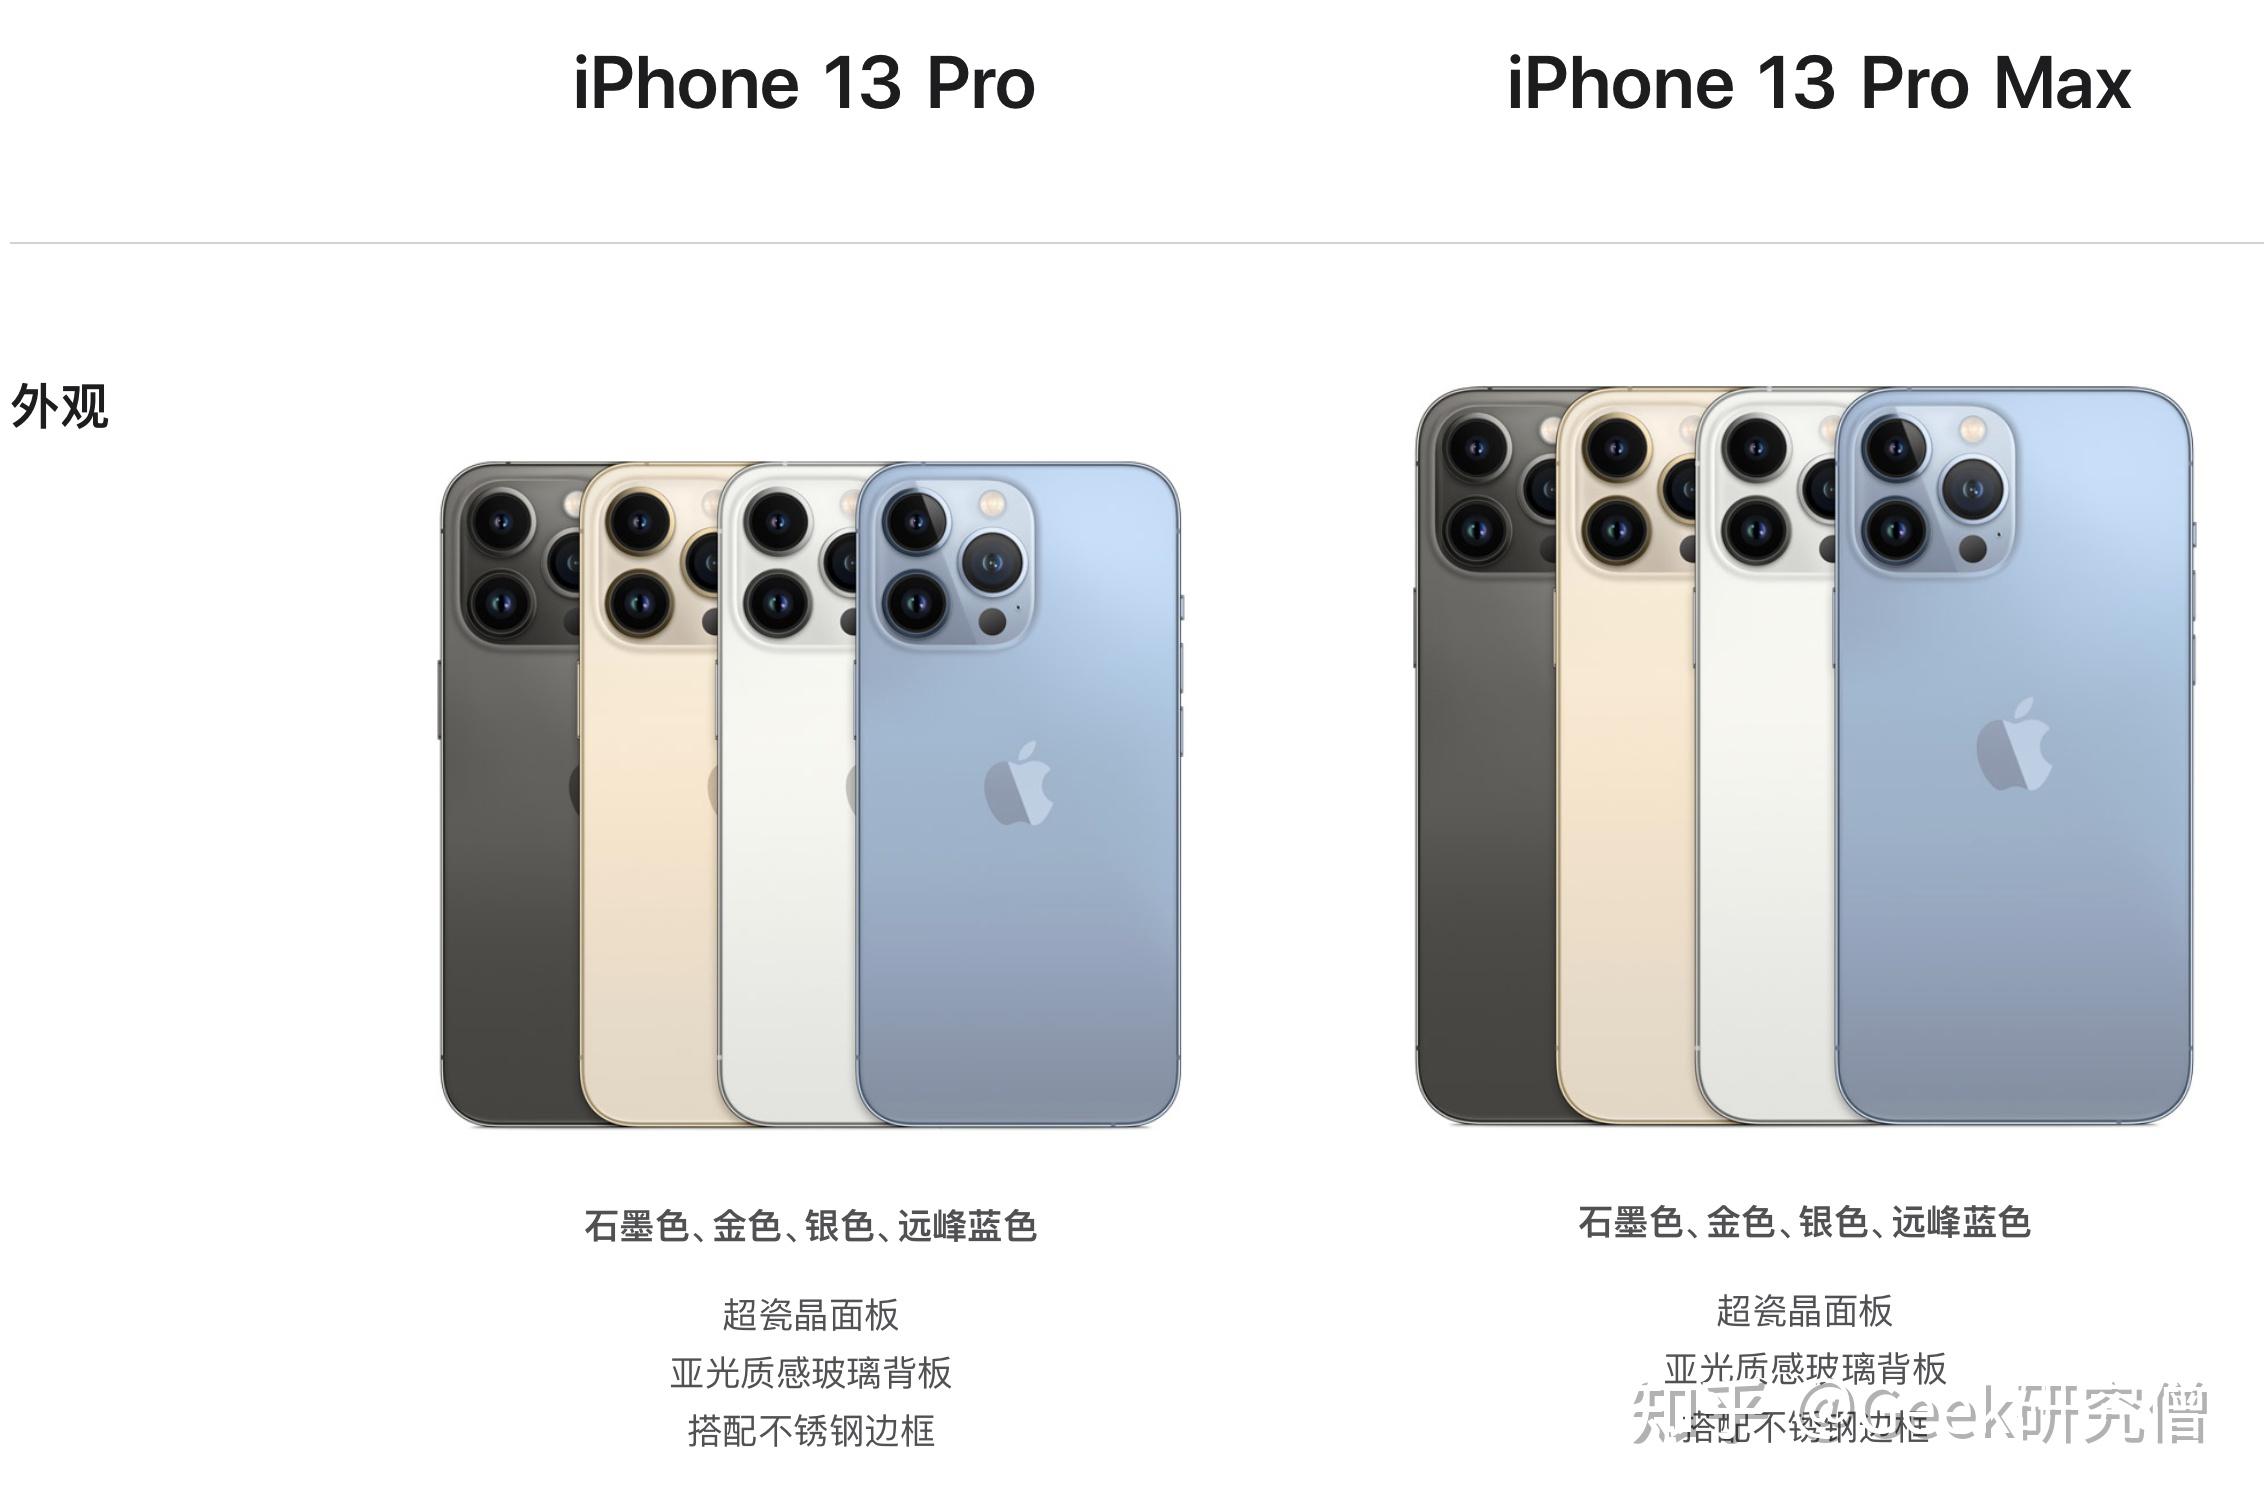 如何评价 9 月 15 日苹果发布的 iphone 13 系列手机,有哪些值得关注